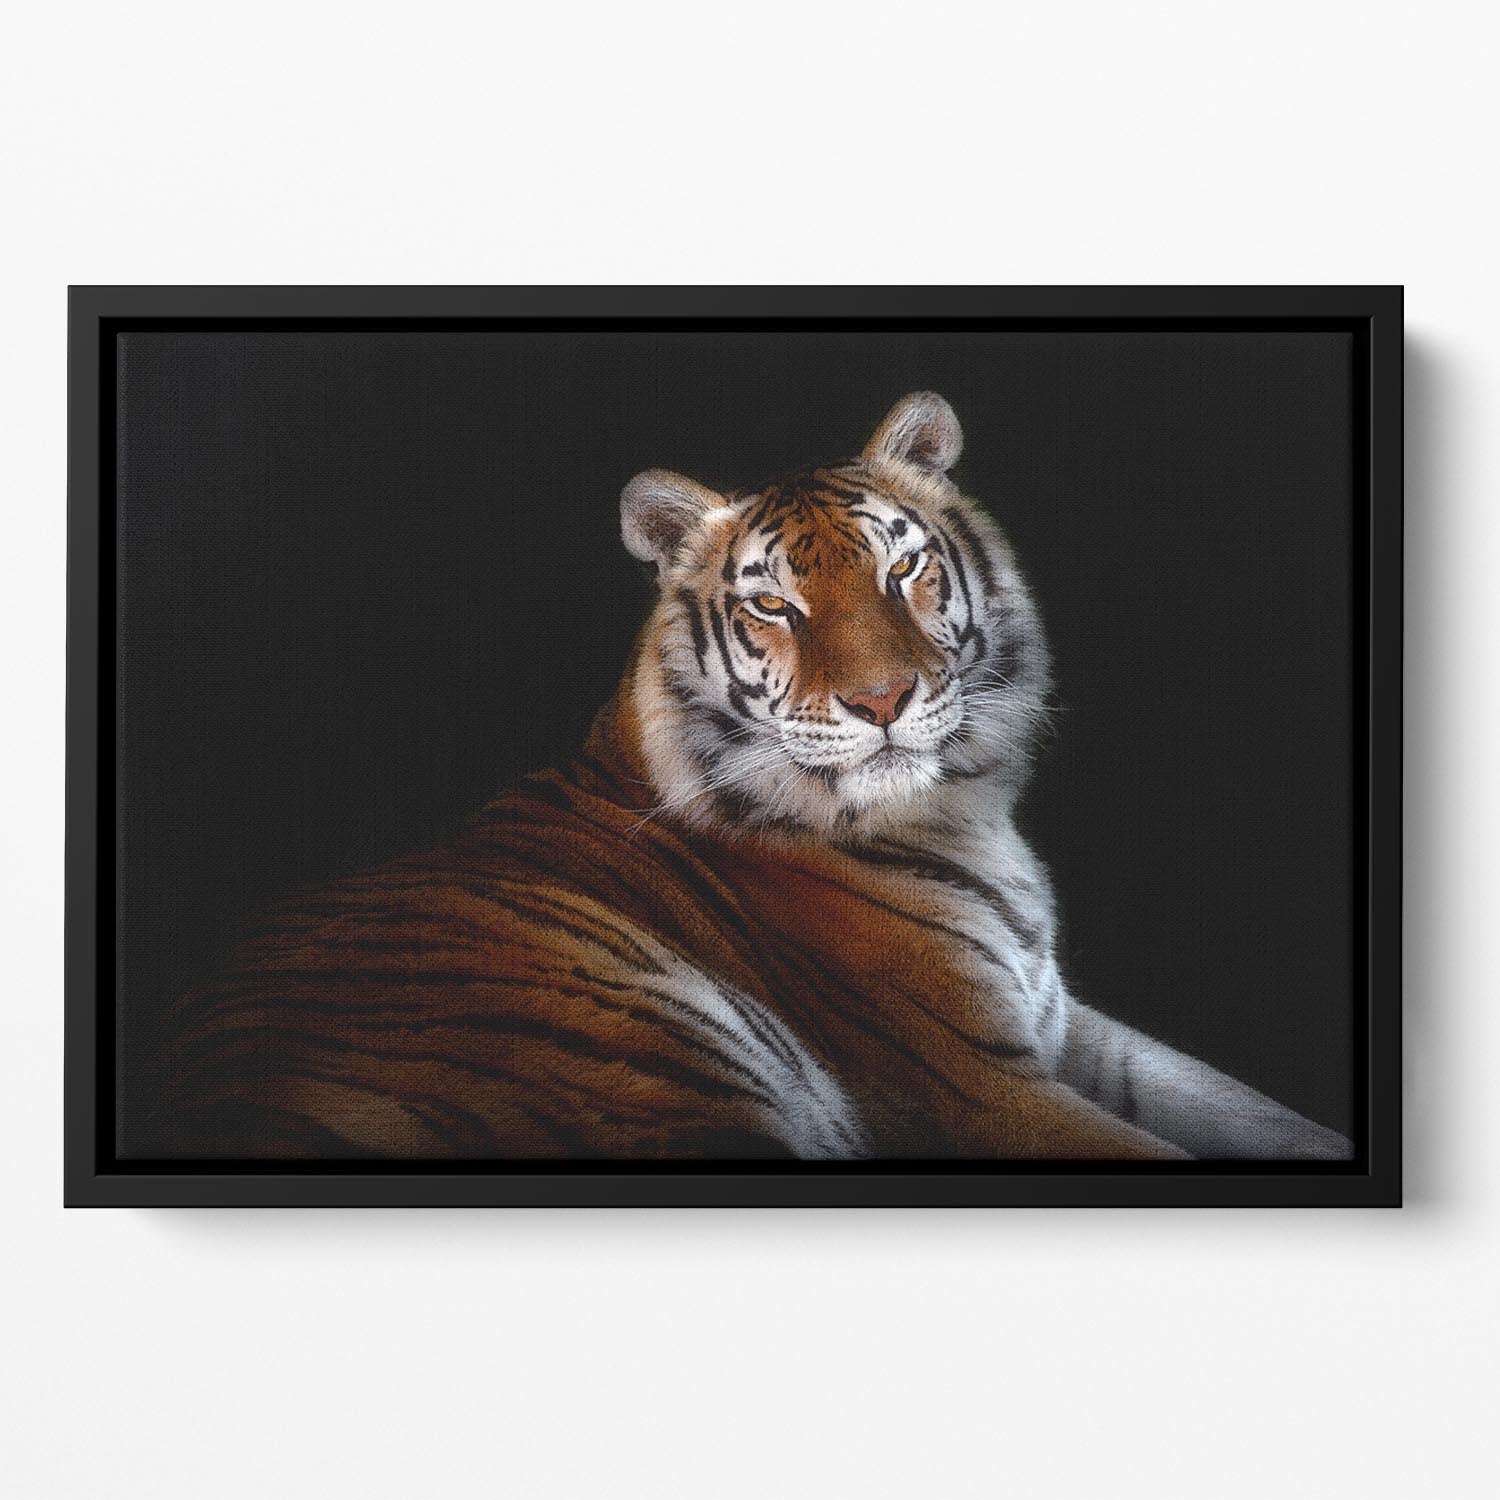 Serenity Tiger Floating Framed Canvas - Canvas Art Rocks - 2